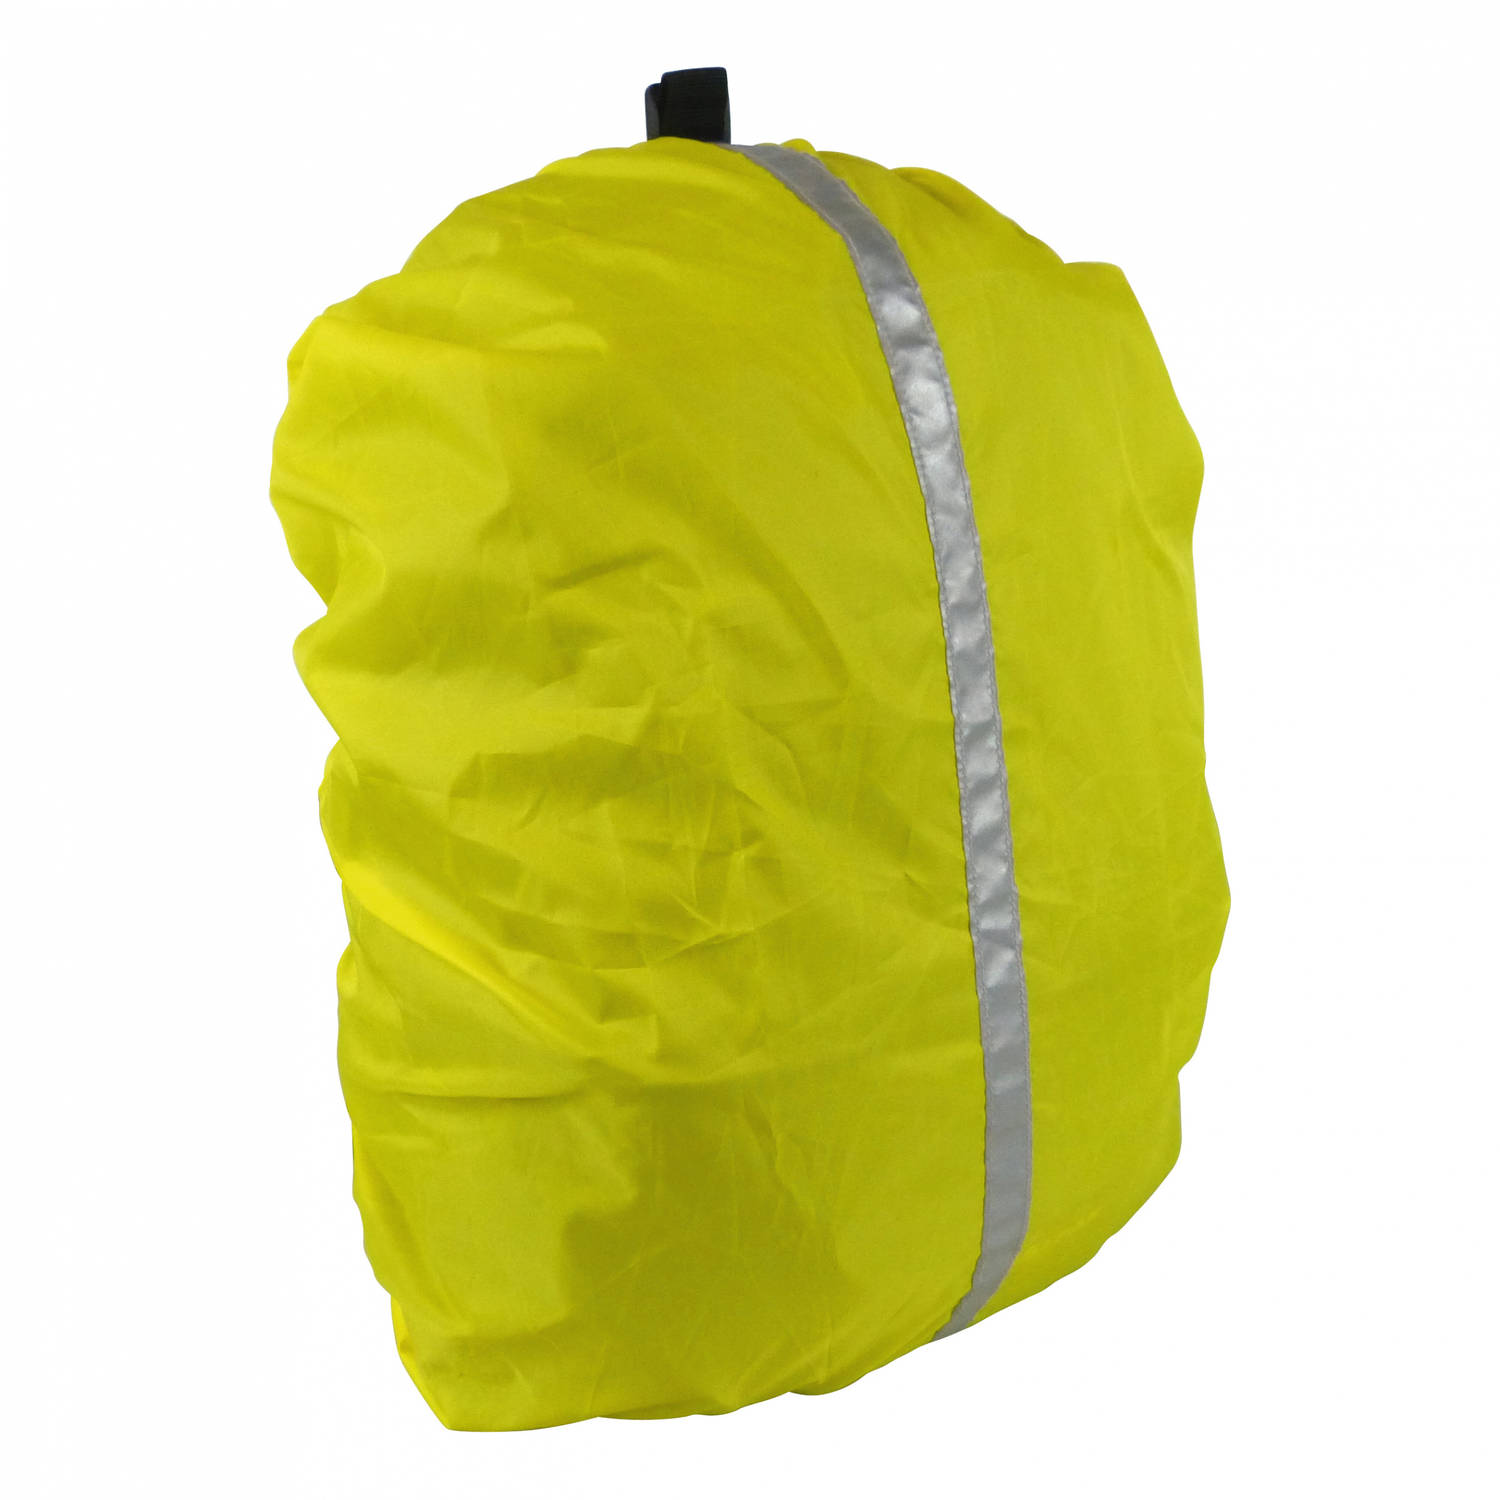 Begraafplaats Rechtdoor Vrijgevig Dresco regenhoes rugzak 20 liter polyester reflecterend geel | Blokker